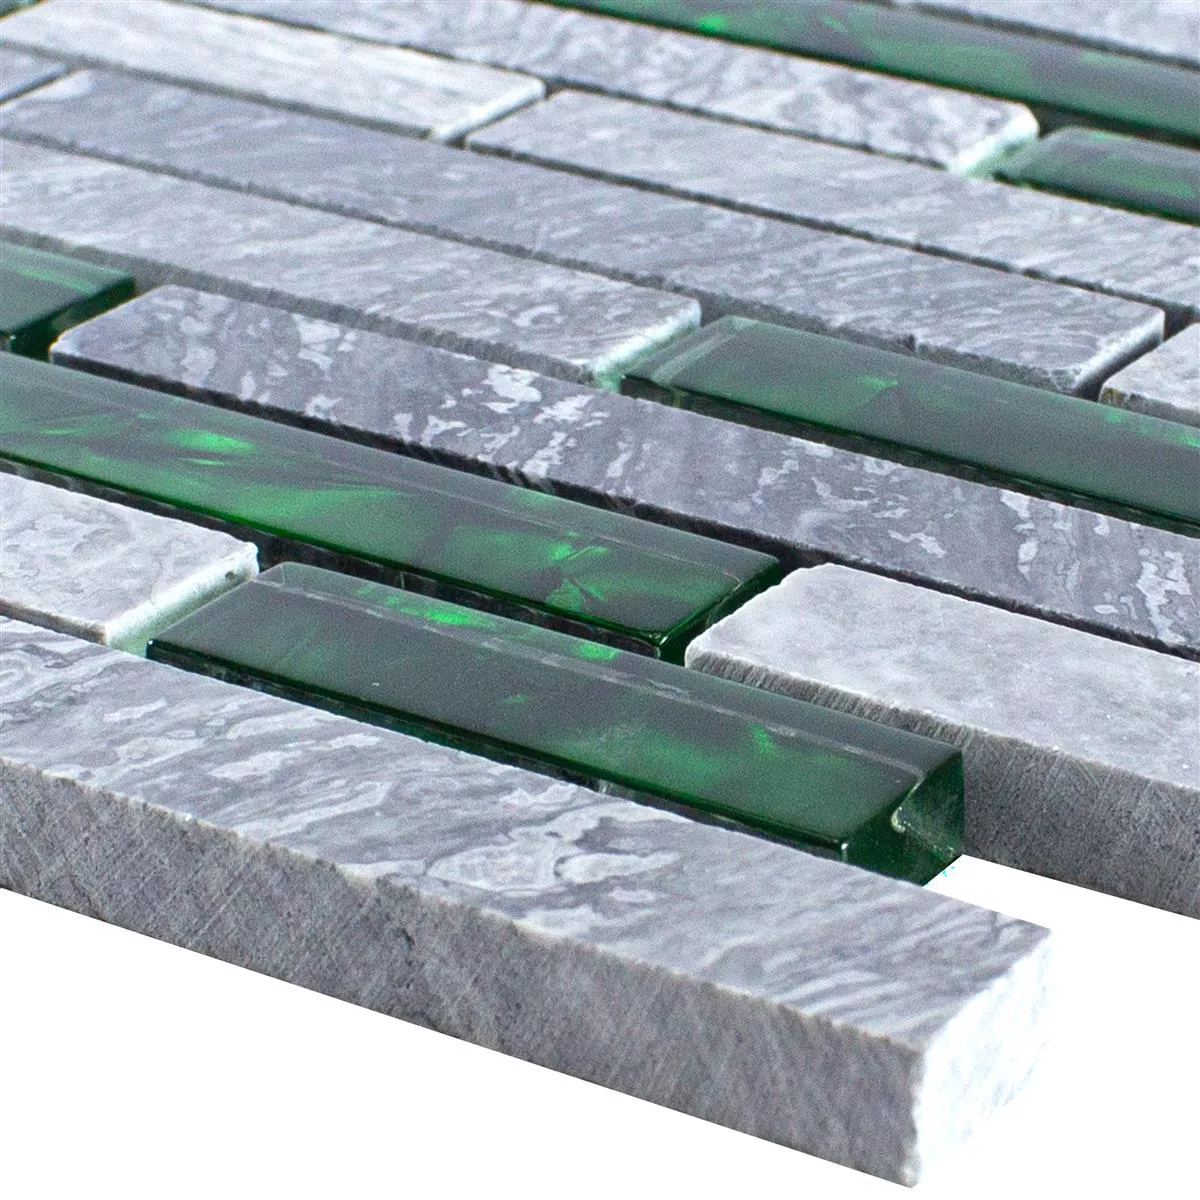 Glass Natural Stone Mosaic Tiles Sinop Grey Green Brick